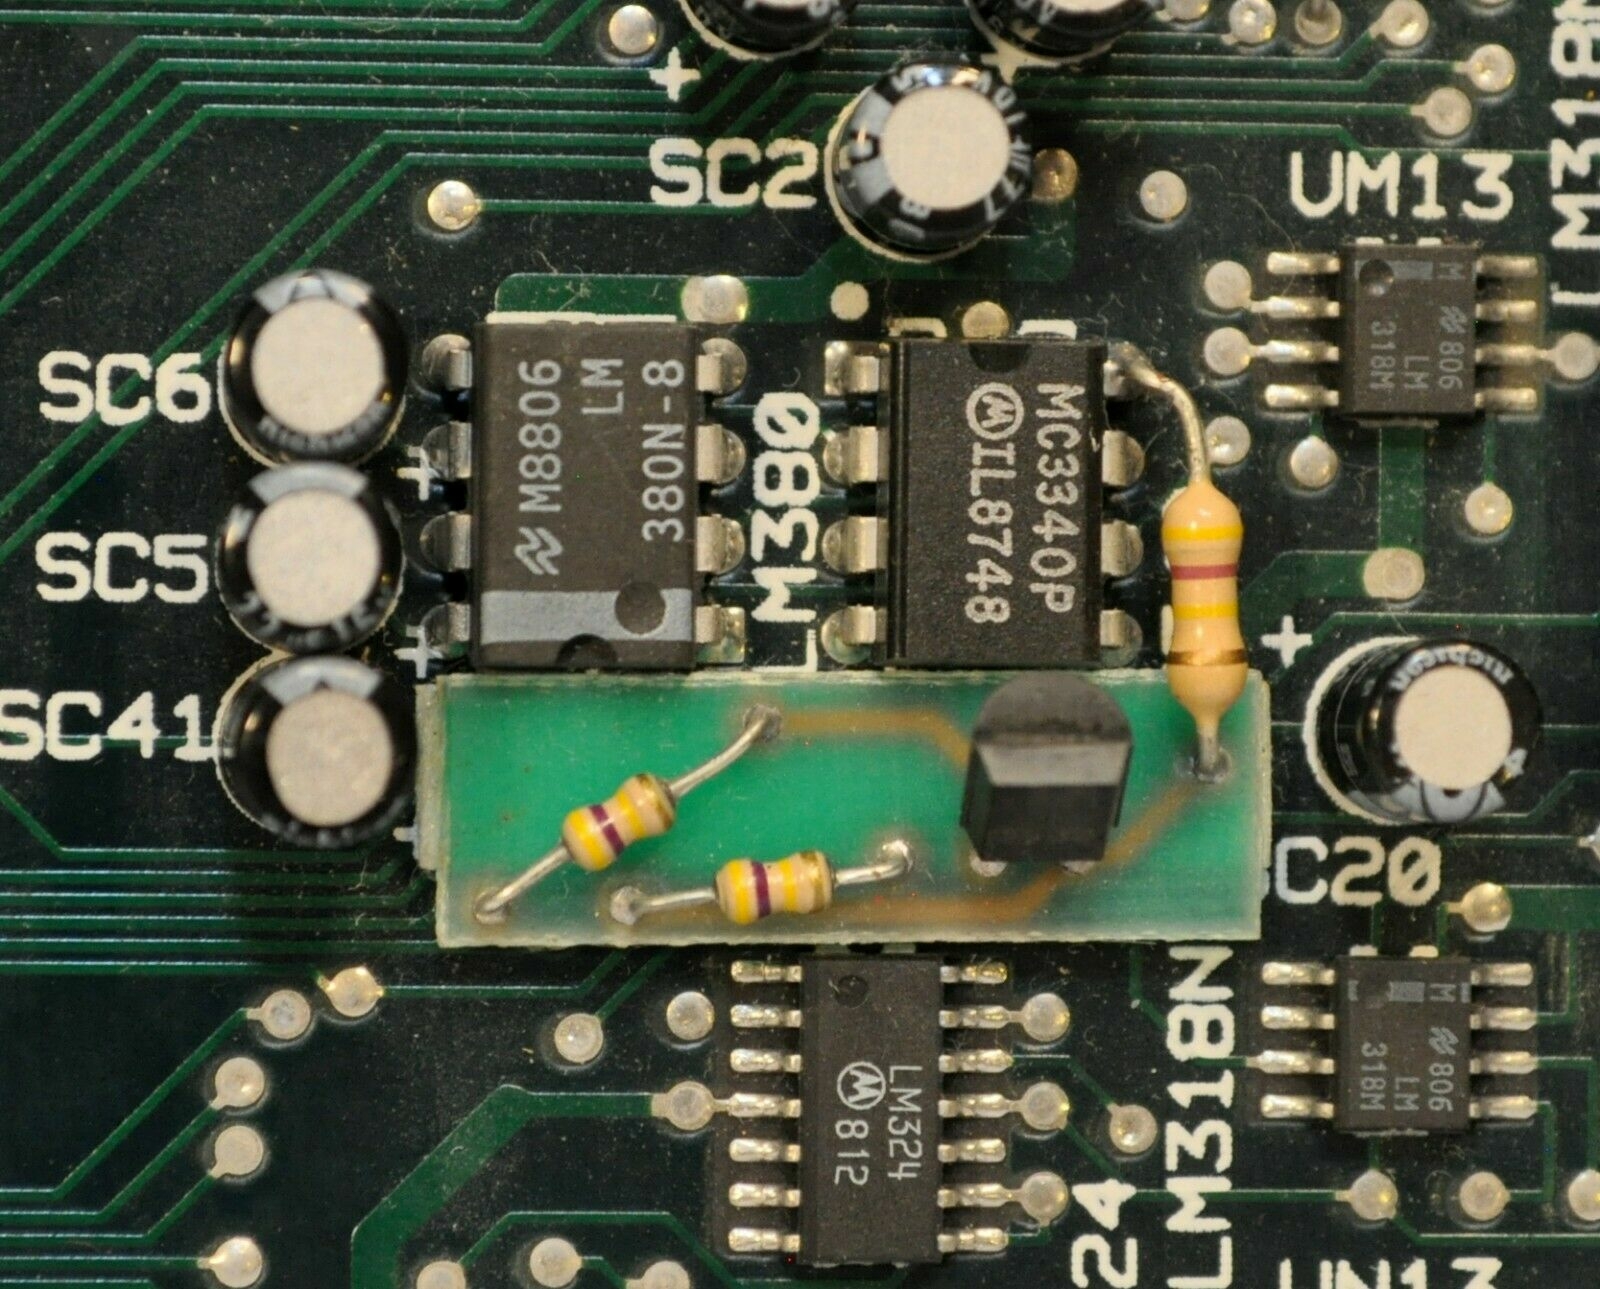 IIgs ROM-0 Bodge Board